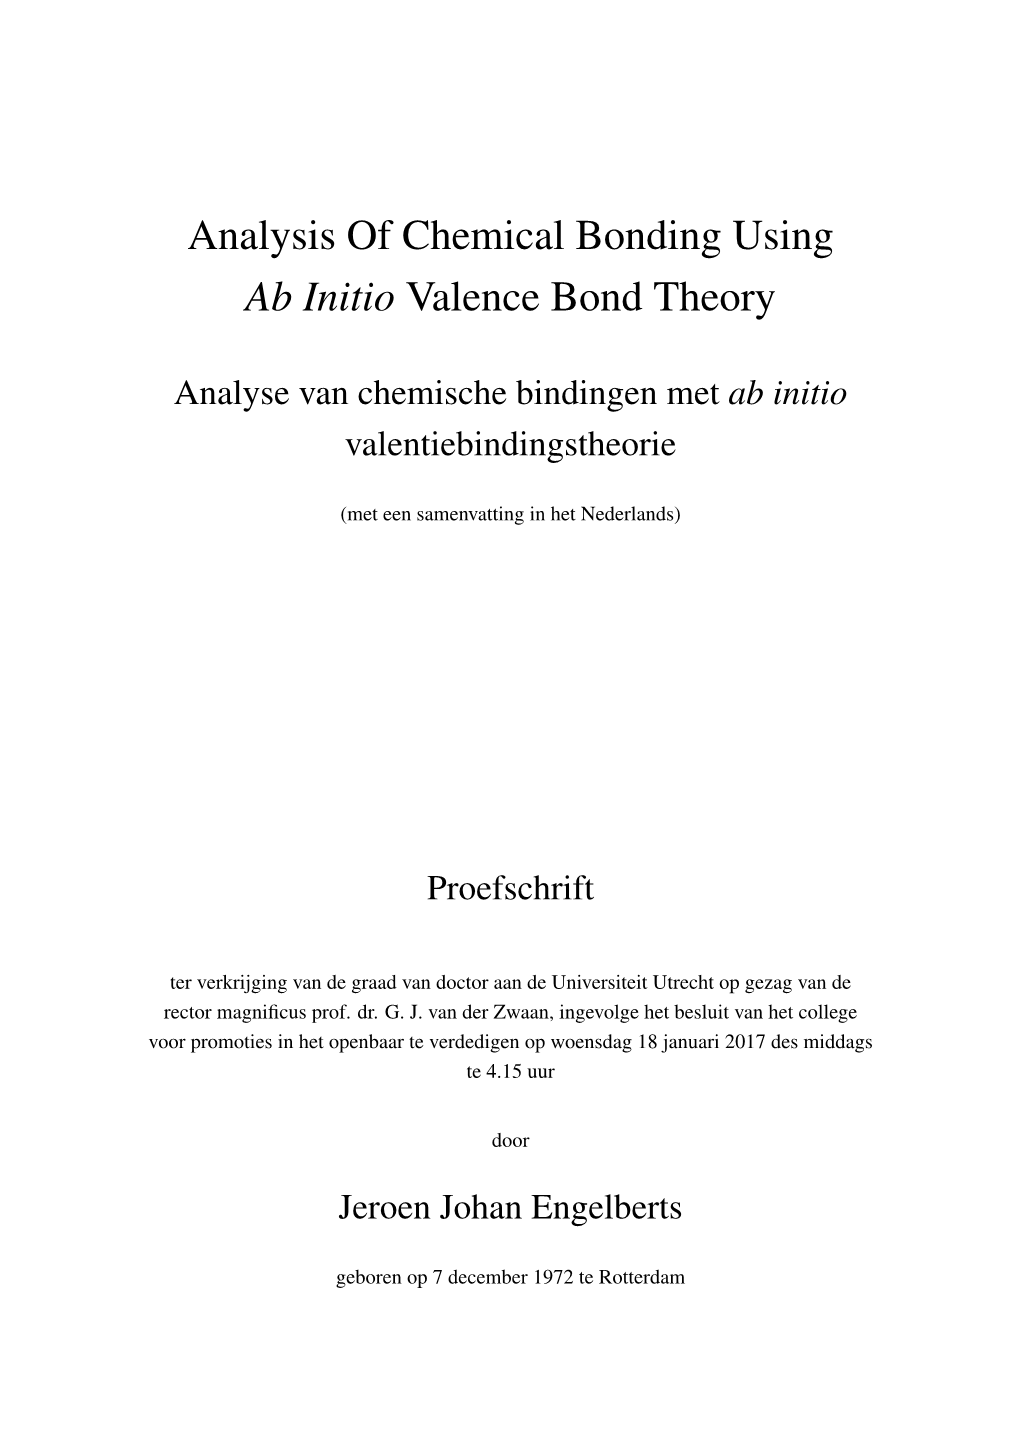 Analysis of Chemical Bonding Using Ab Initio Valence Bond Theory